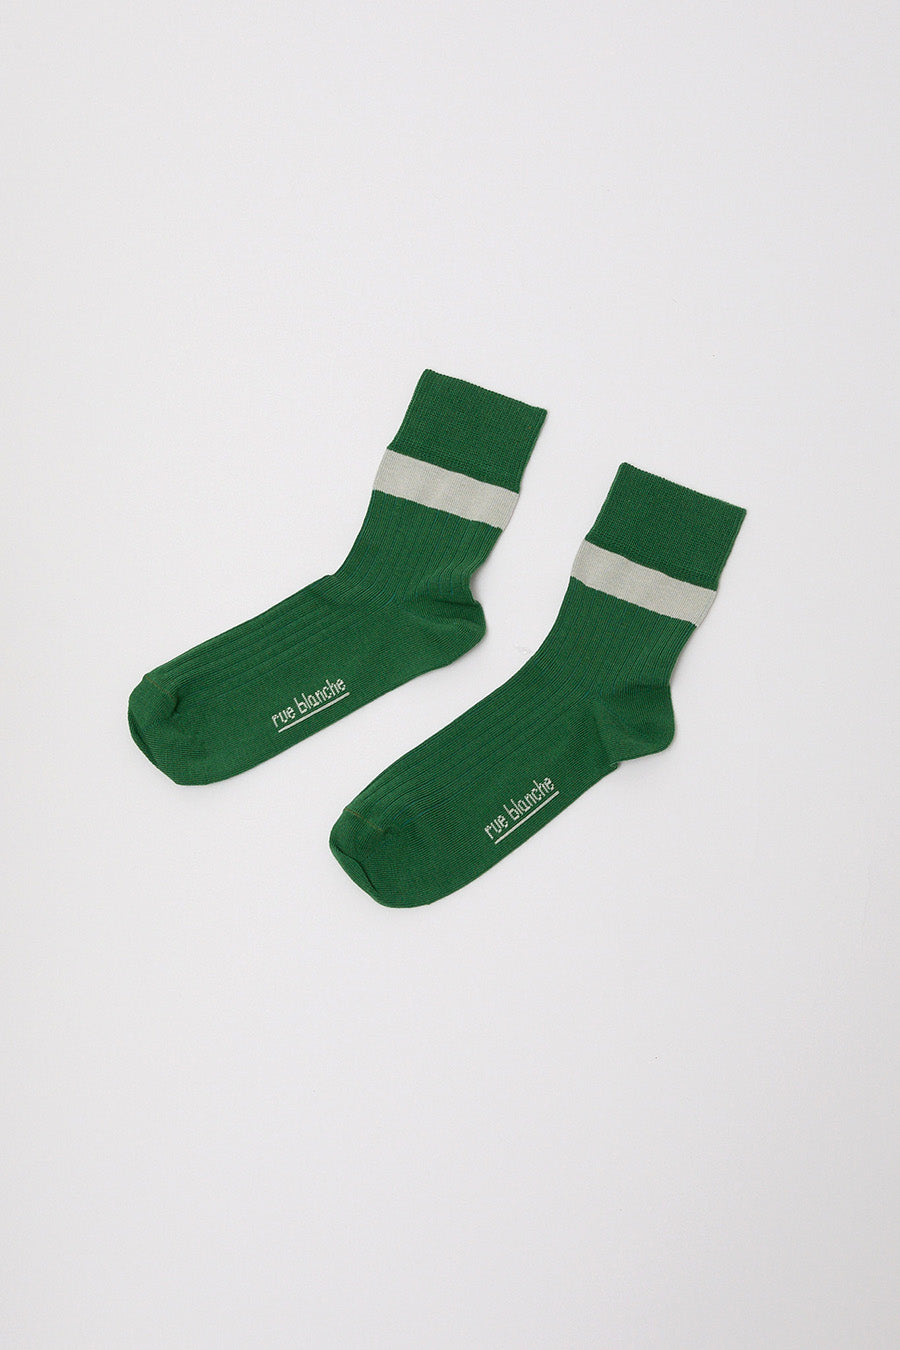 Rue Blanche Bicolor Socks in Green